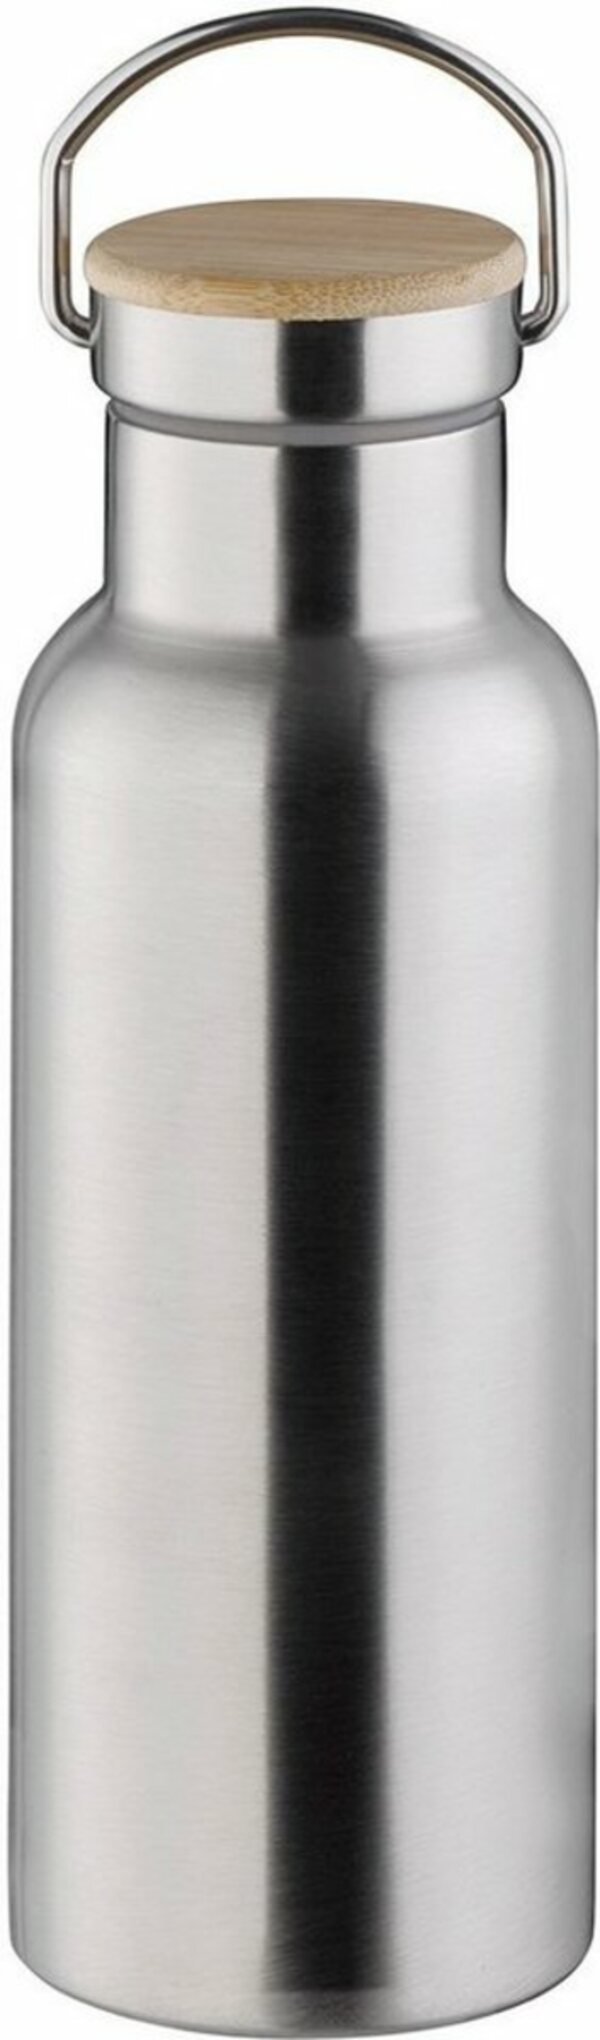 Bild 1 von APS Isolierflasche, Edelstahl, doppelwandig, hält bis 12 Stunden heiß & 24 Stunden kalt